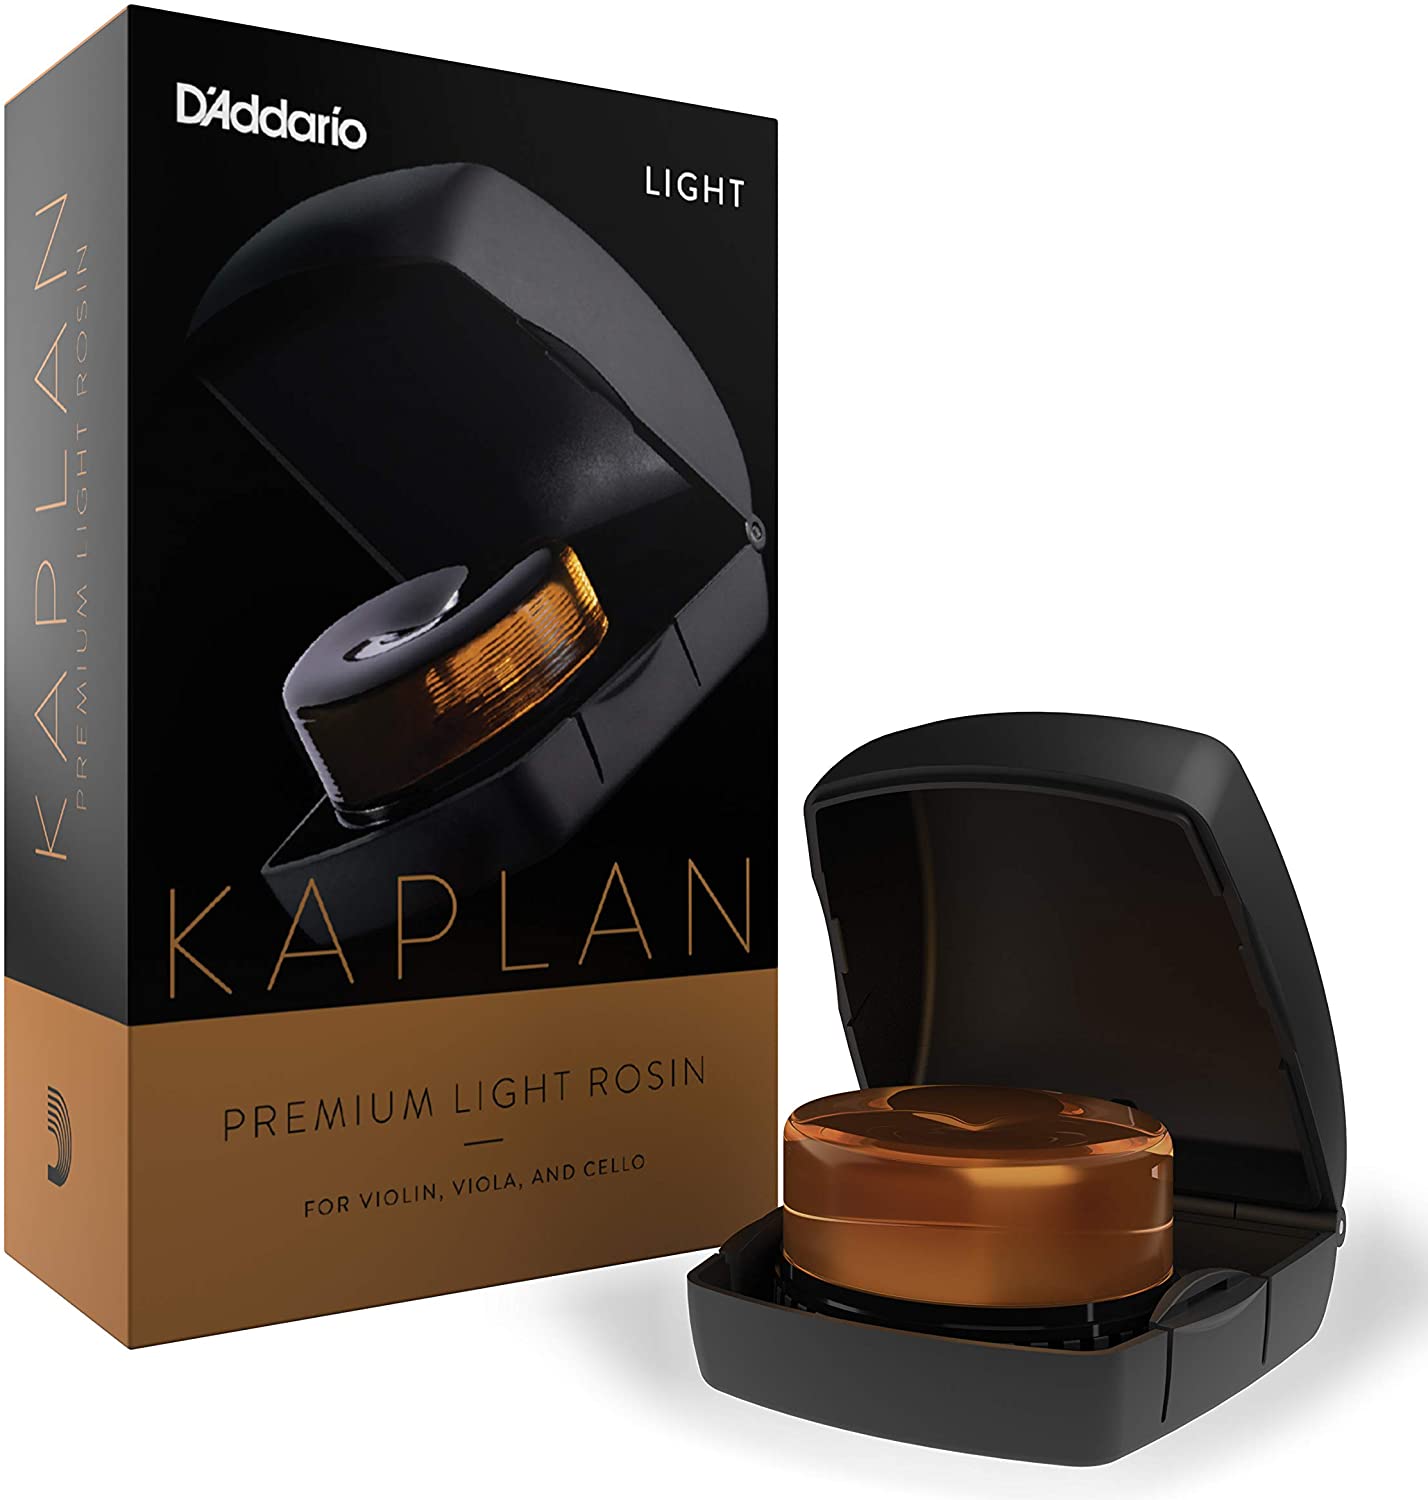 Kaplan Premium Light Rosin with Case